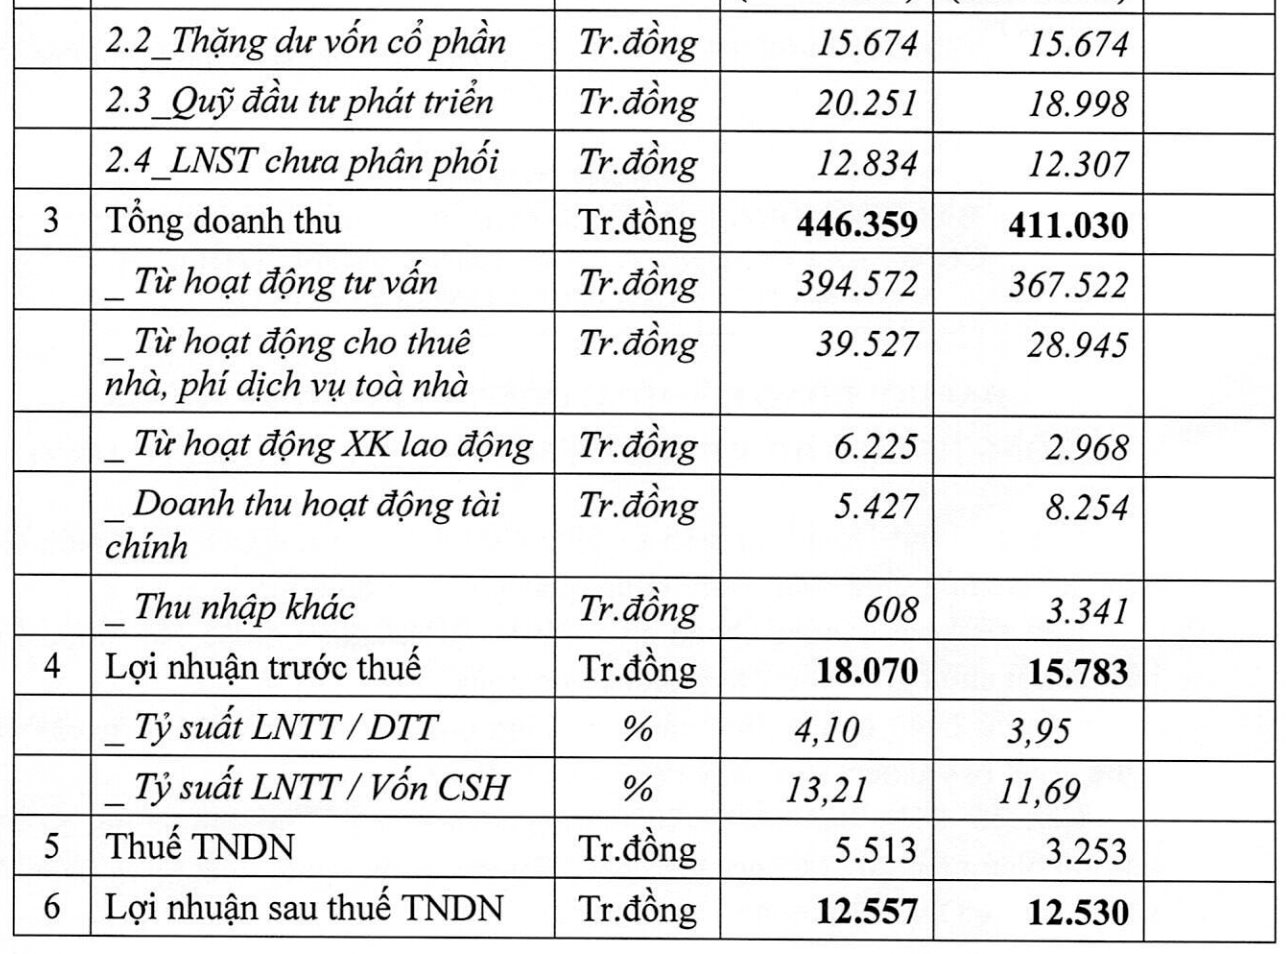 Lộ diện nhà thầu Việt trúng gói thầu 5.12 trị giá 630 tỷ đồng thuộc dự án sân bay Long Thành, đang giao dịch trên sàn chứng khoán - Ảnh 2.